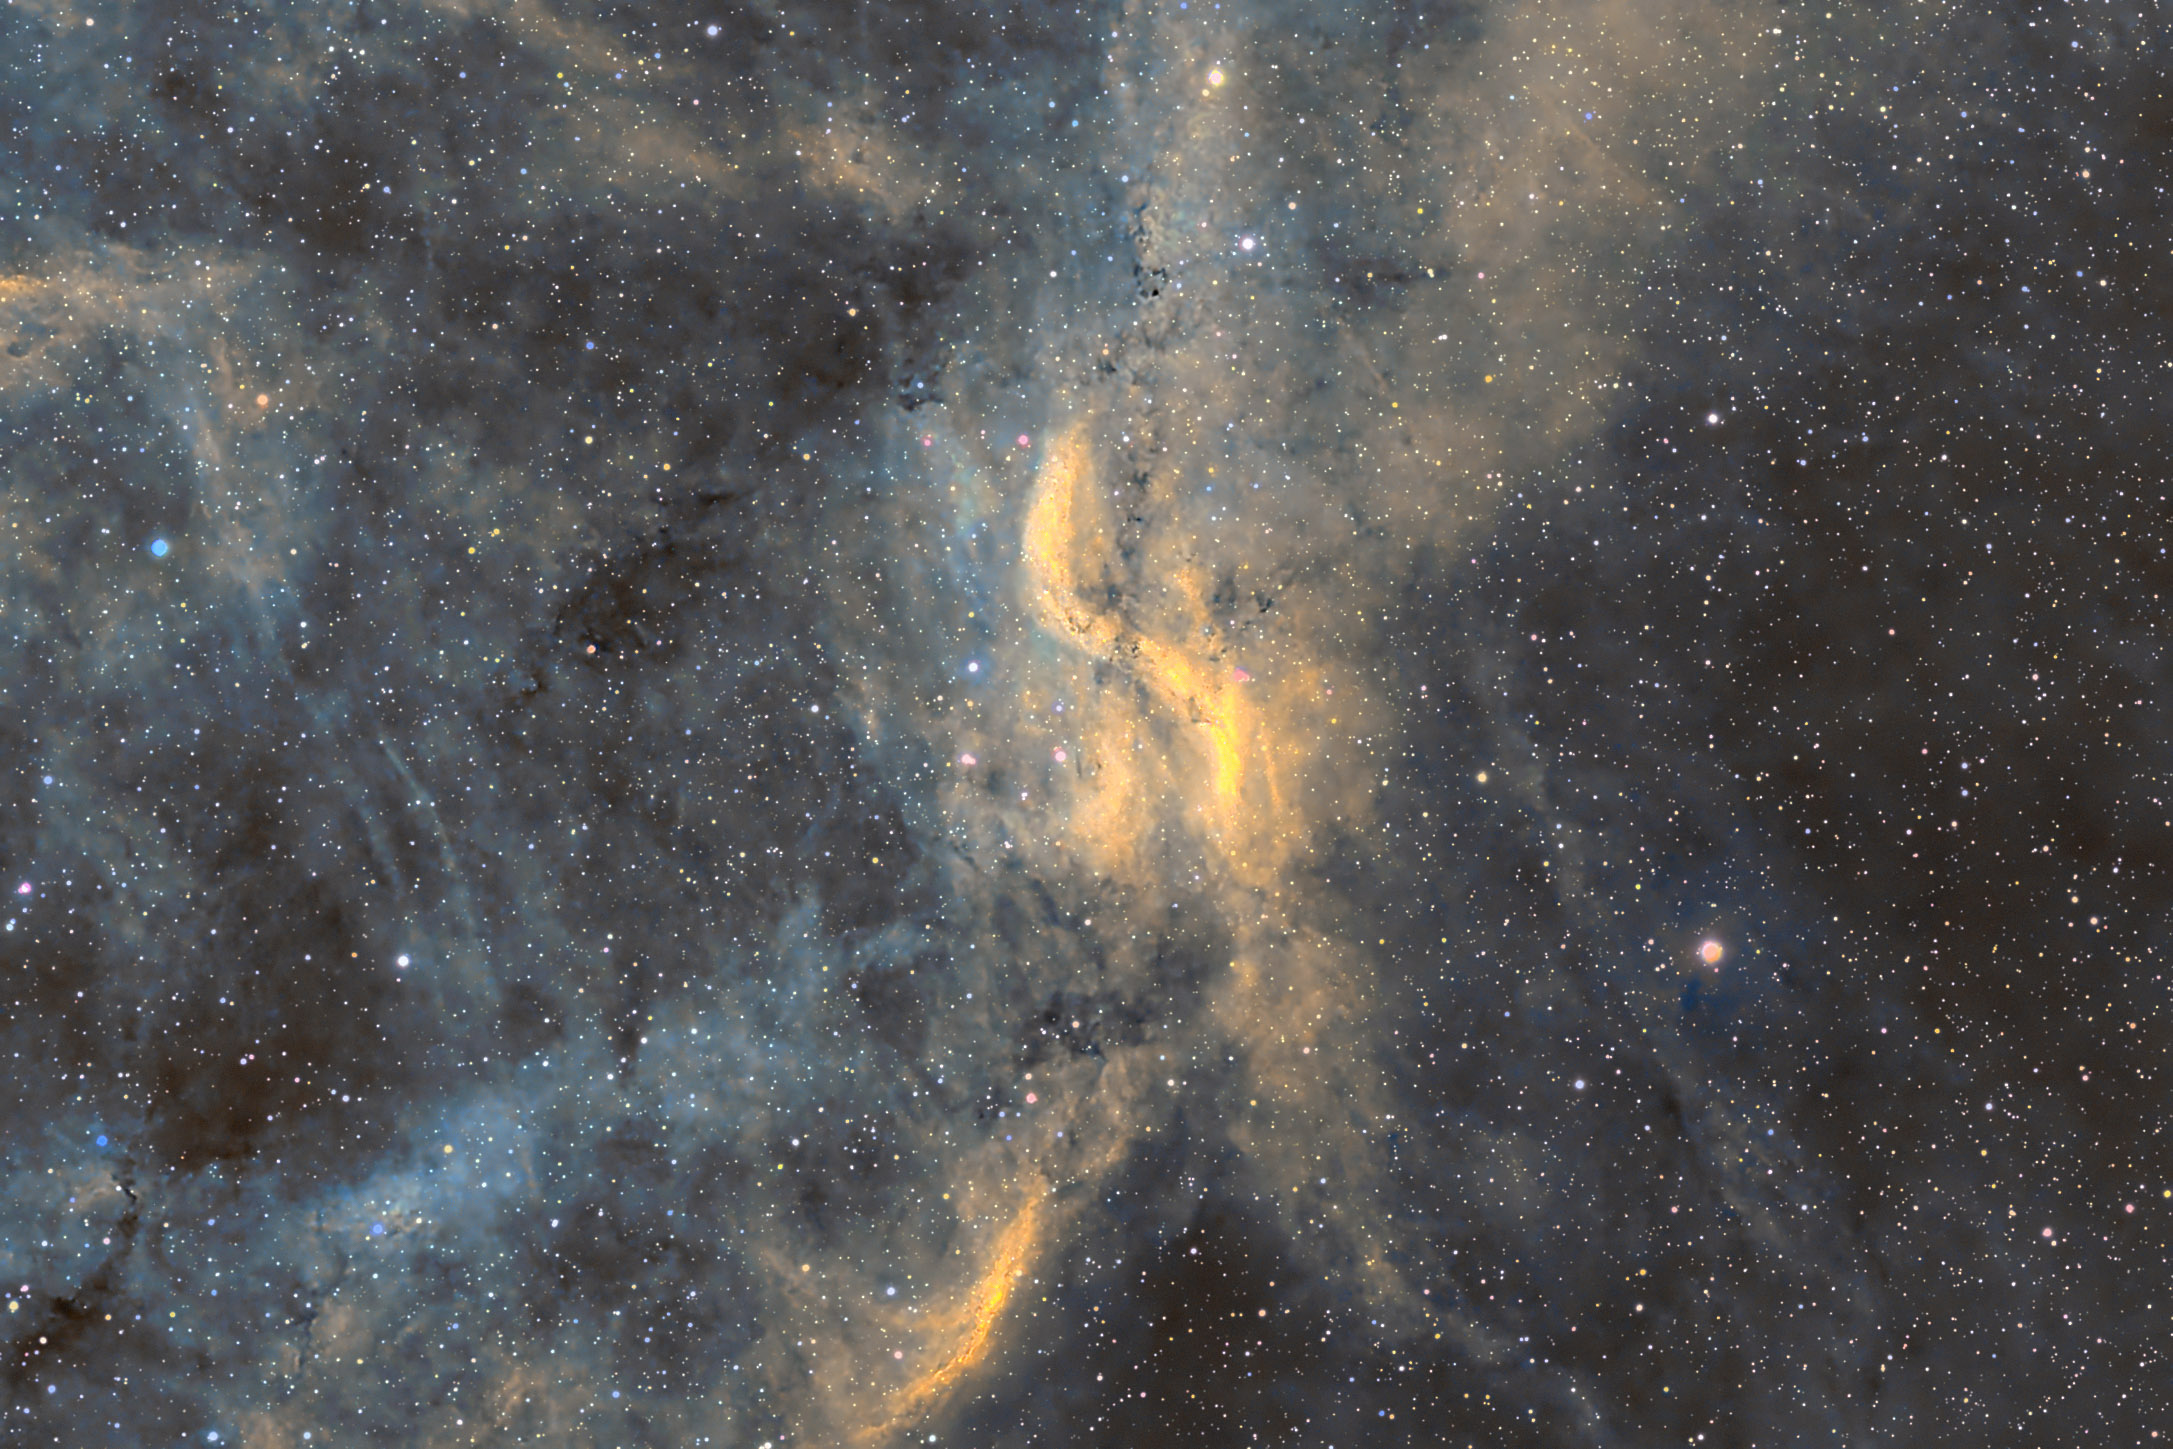 Proppeller Nebula_gvdb.jpg